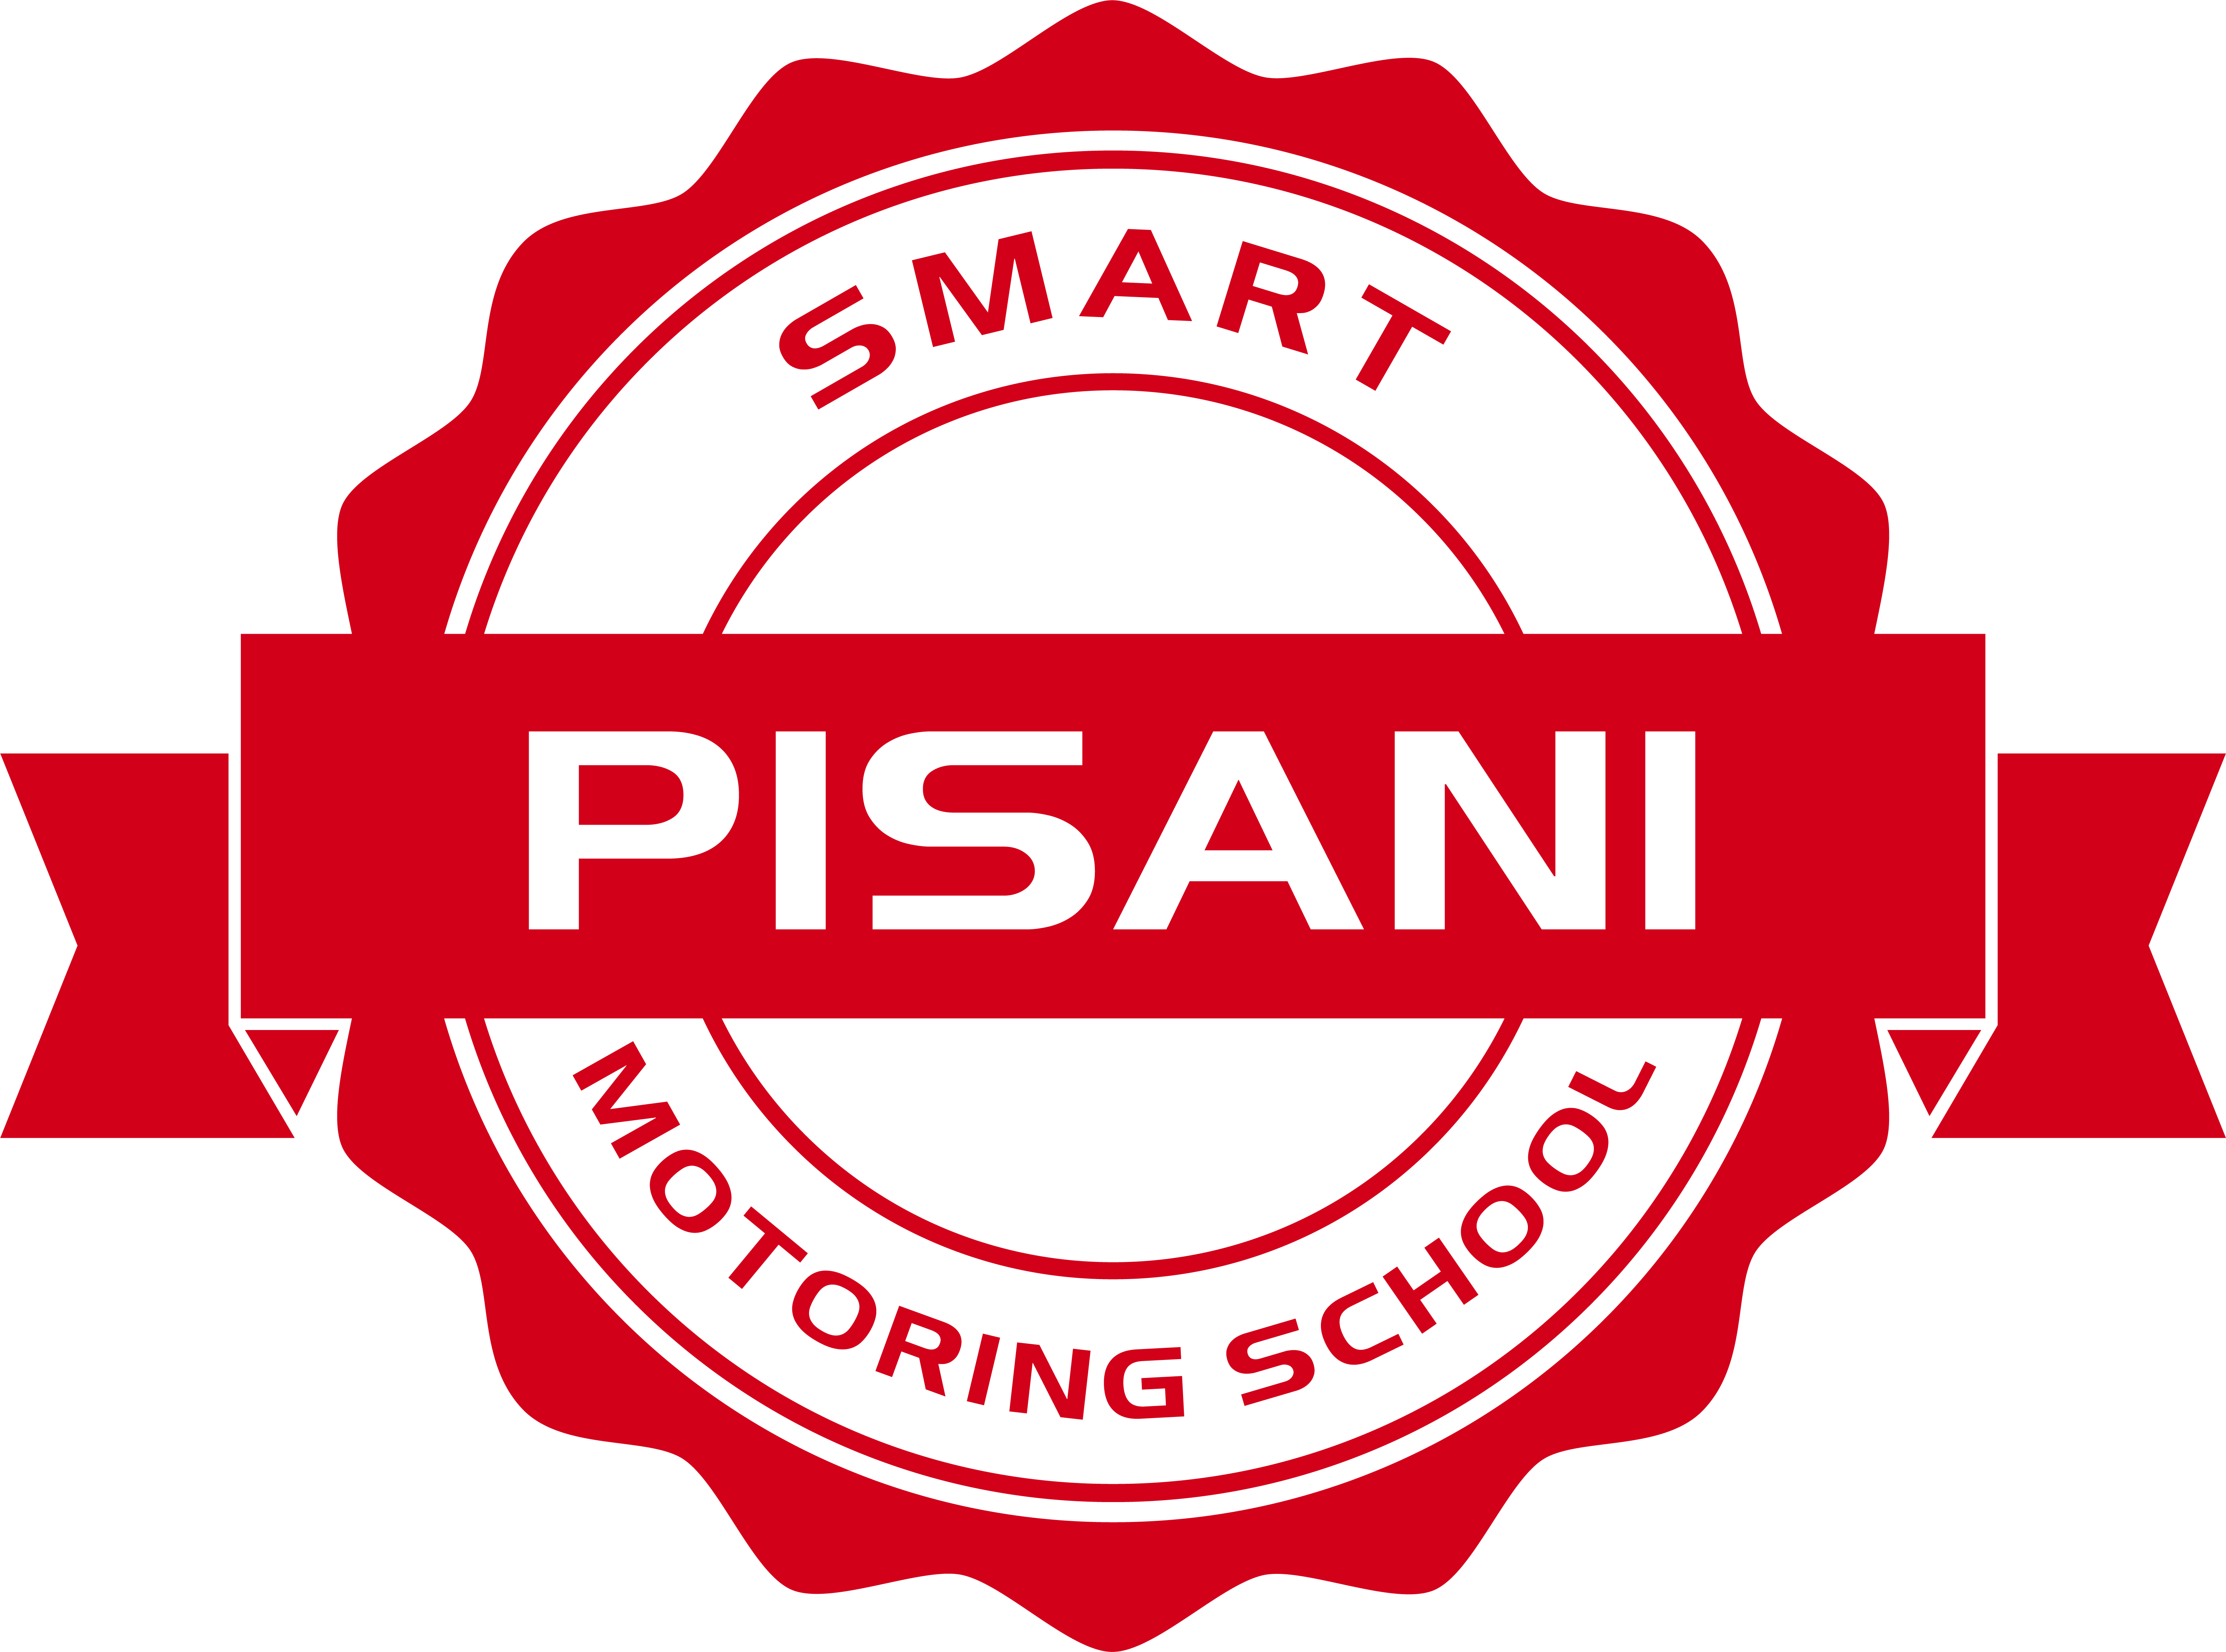 Pisani Motoring School Stamp